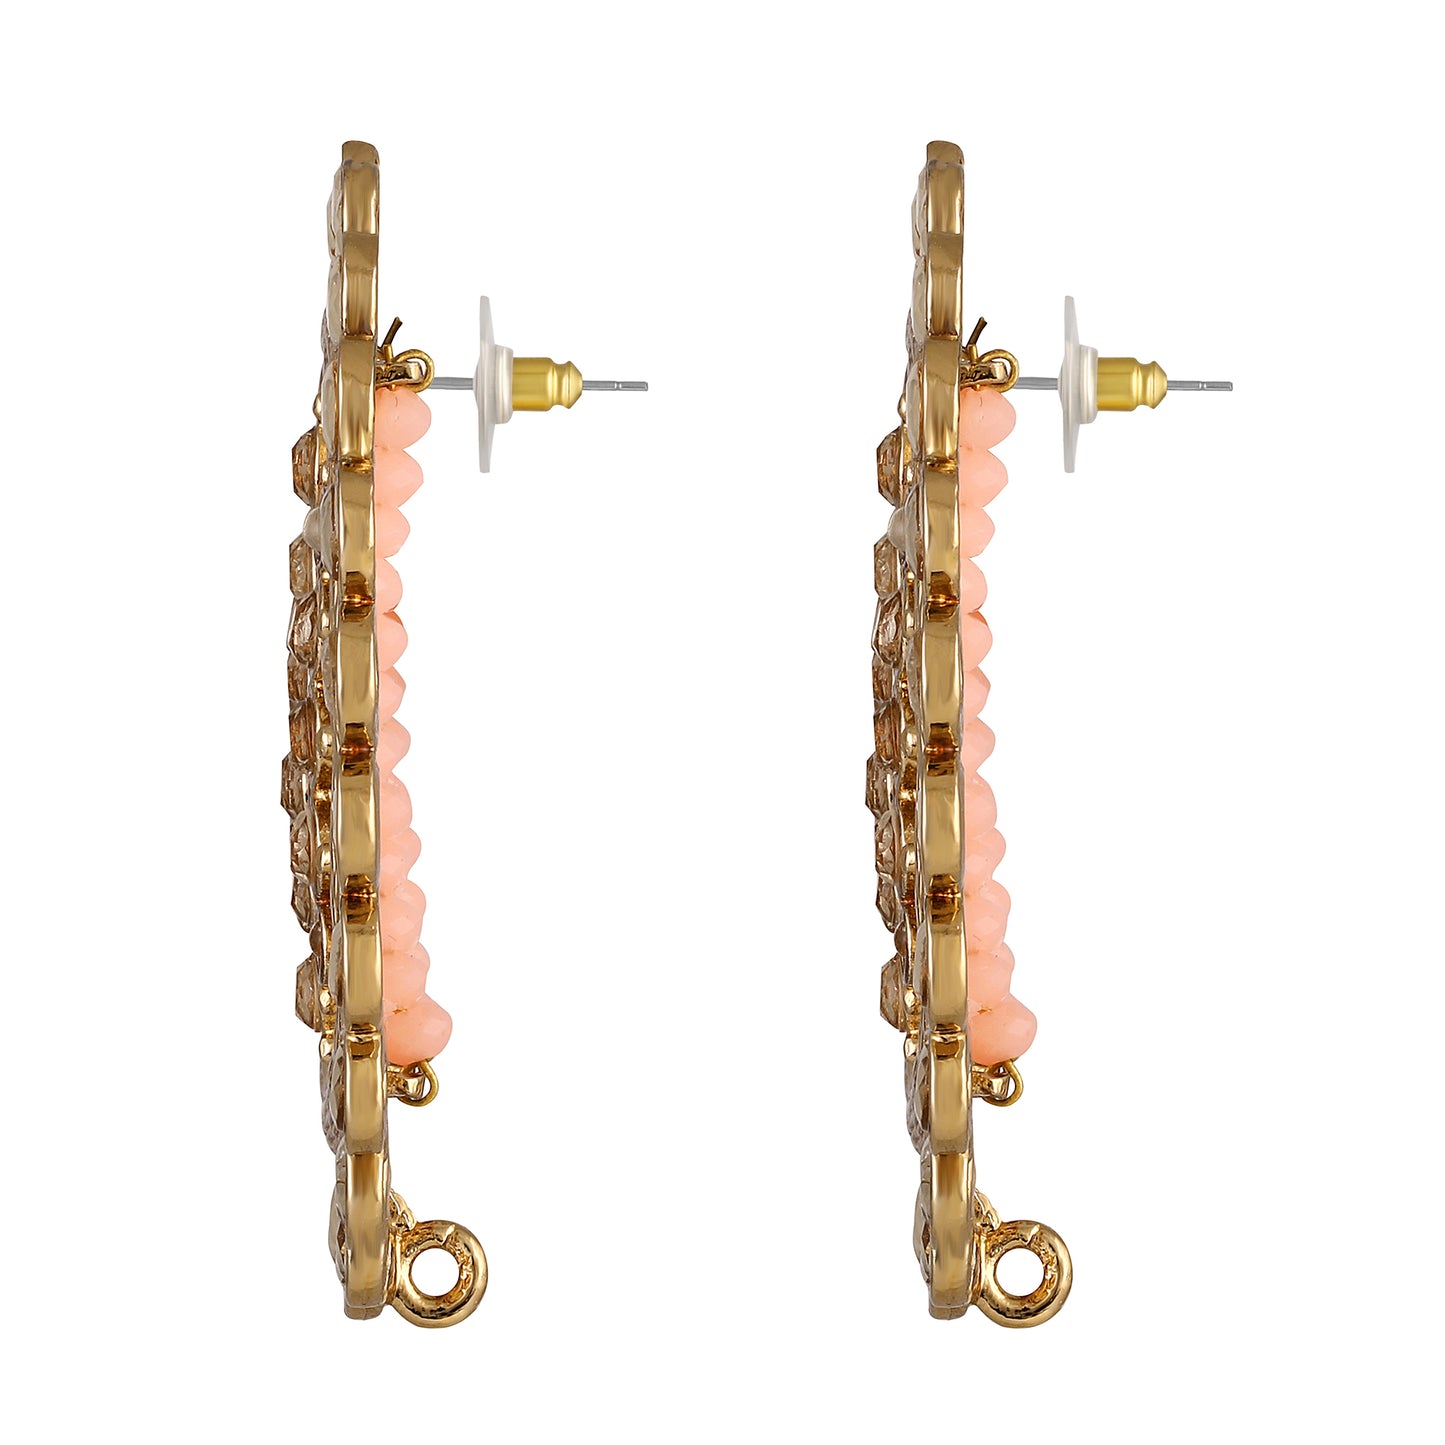 Bdiva 18K Gold Plated Kundan Orange Beads Earrings.